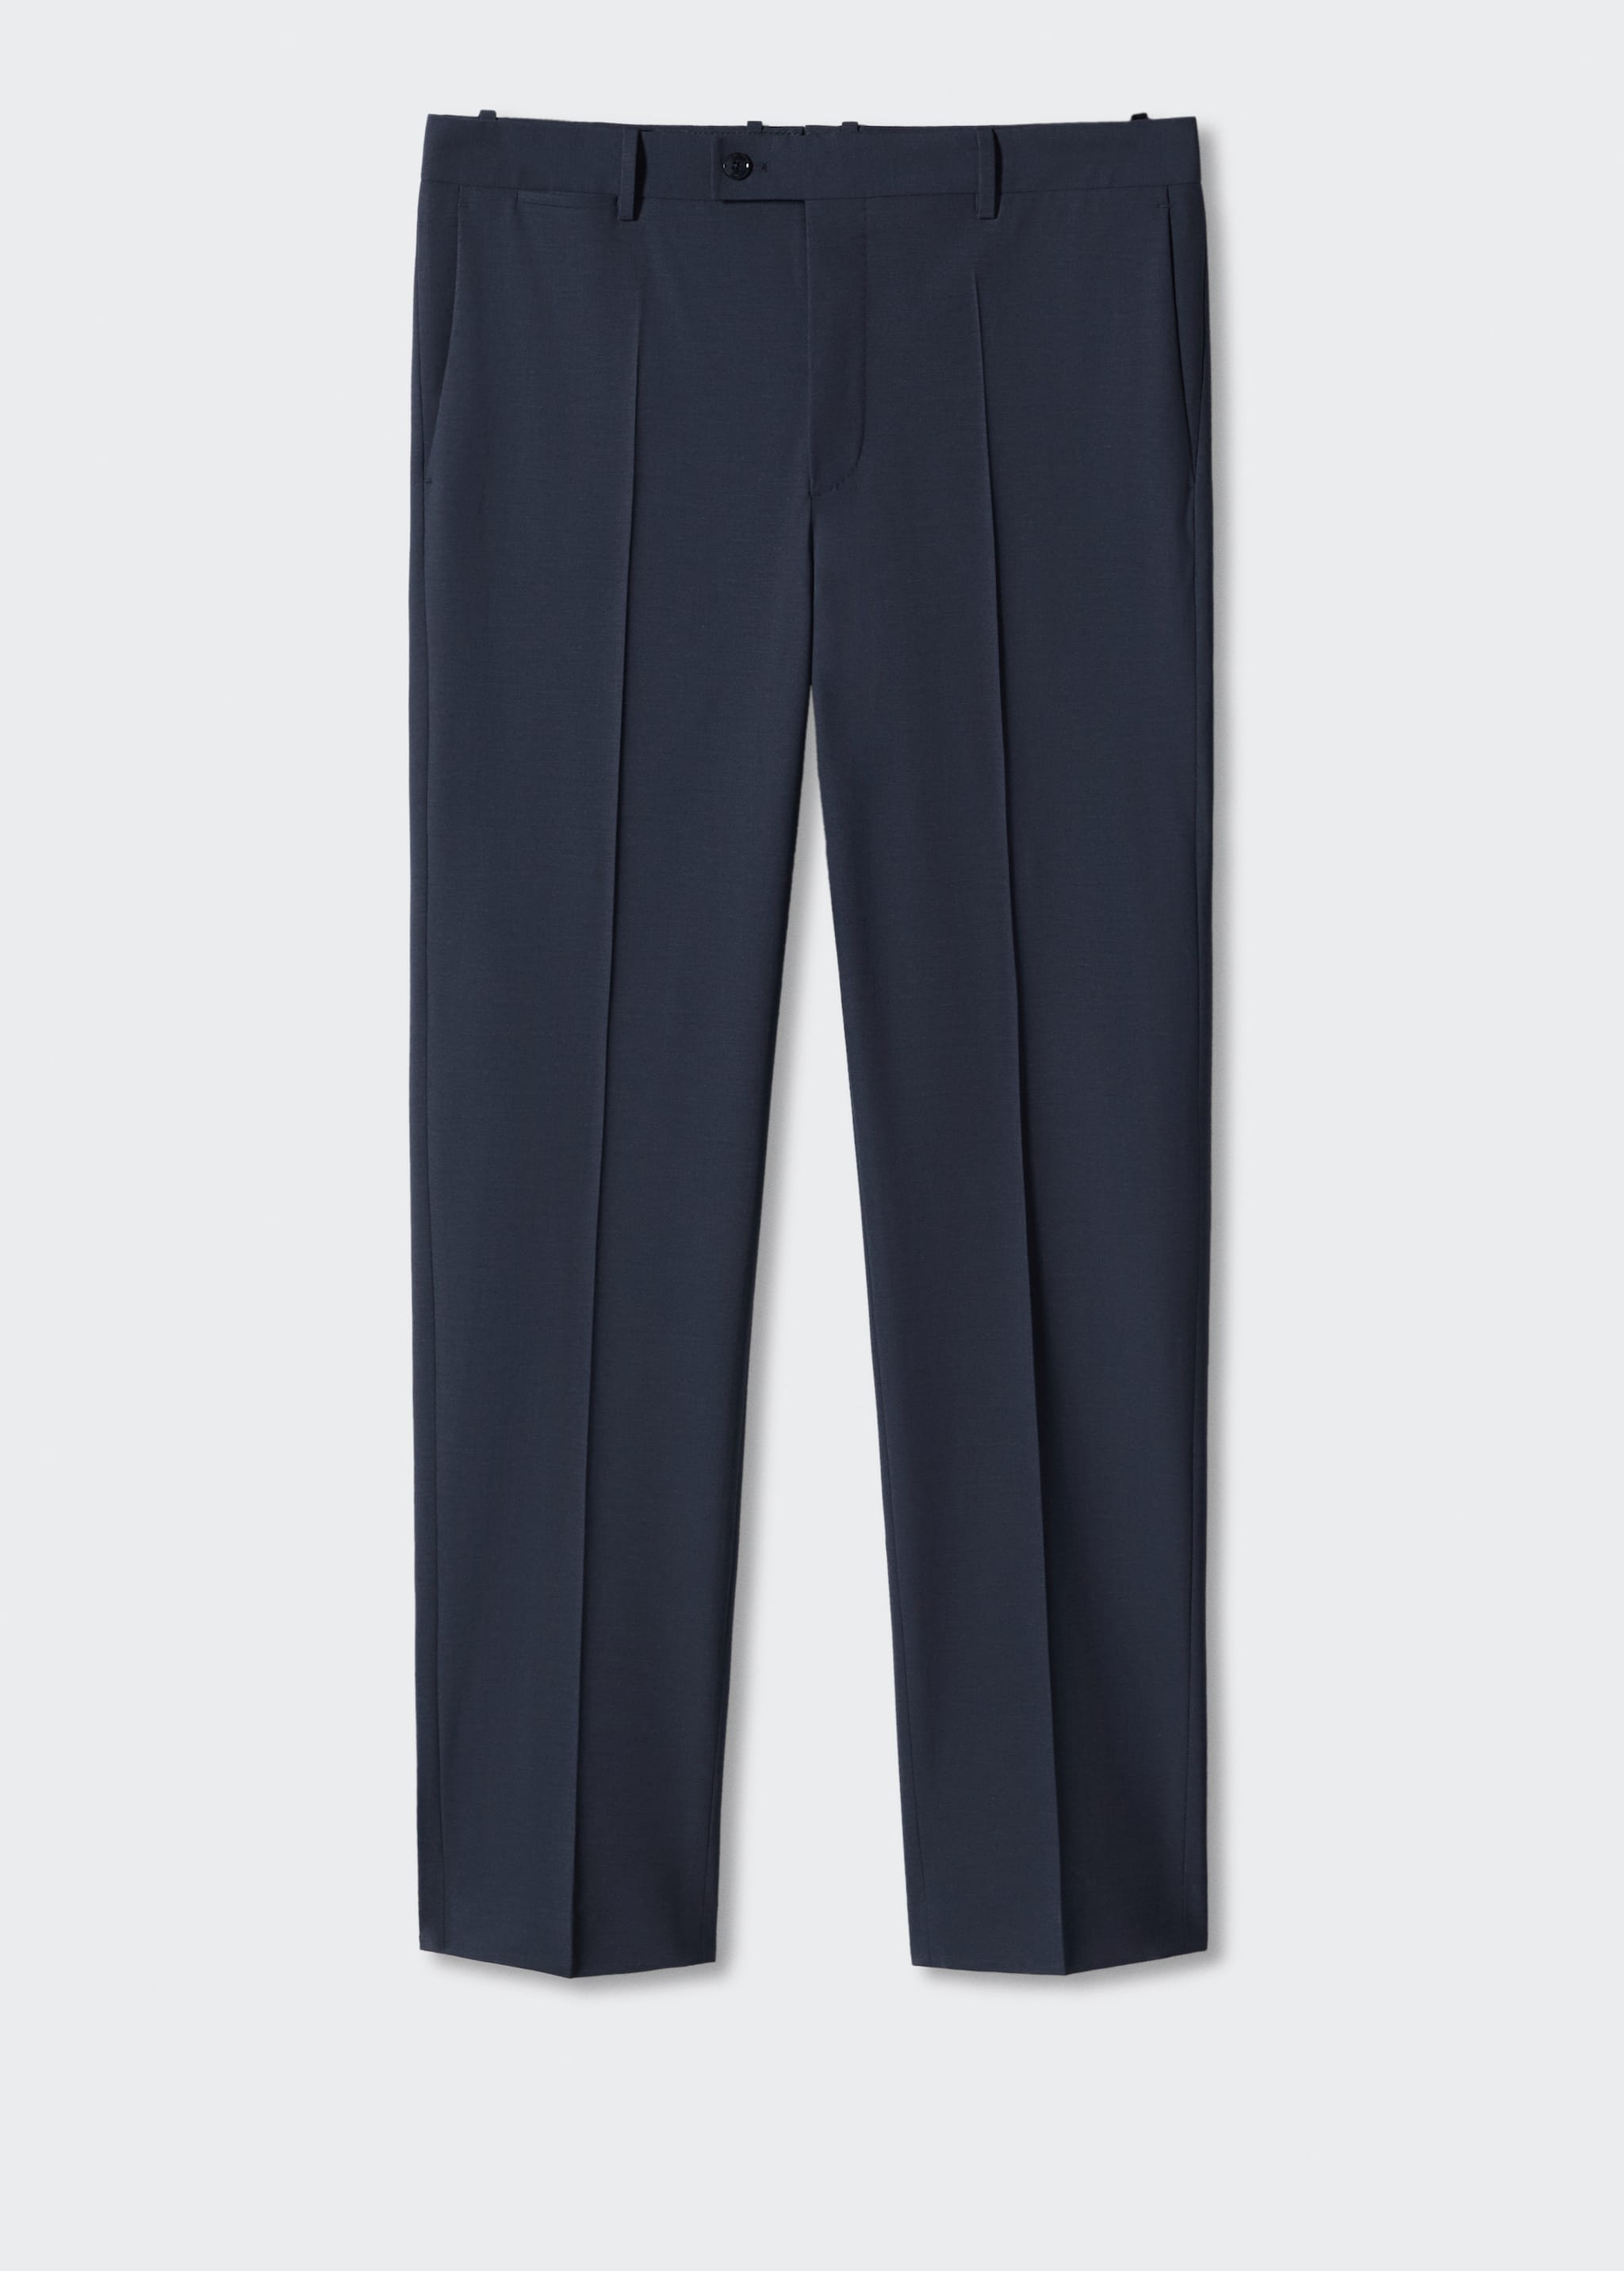 Pantalons vestir slim fit llana - Article sense model